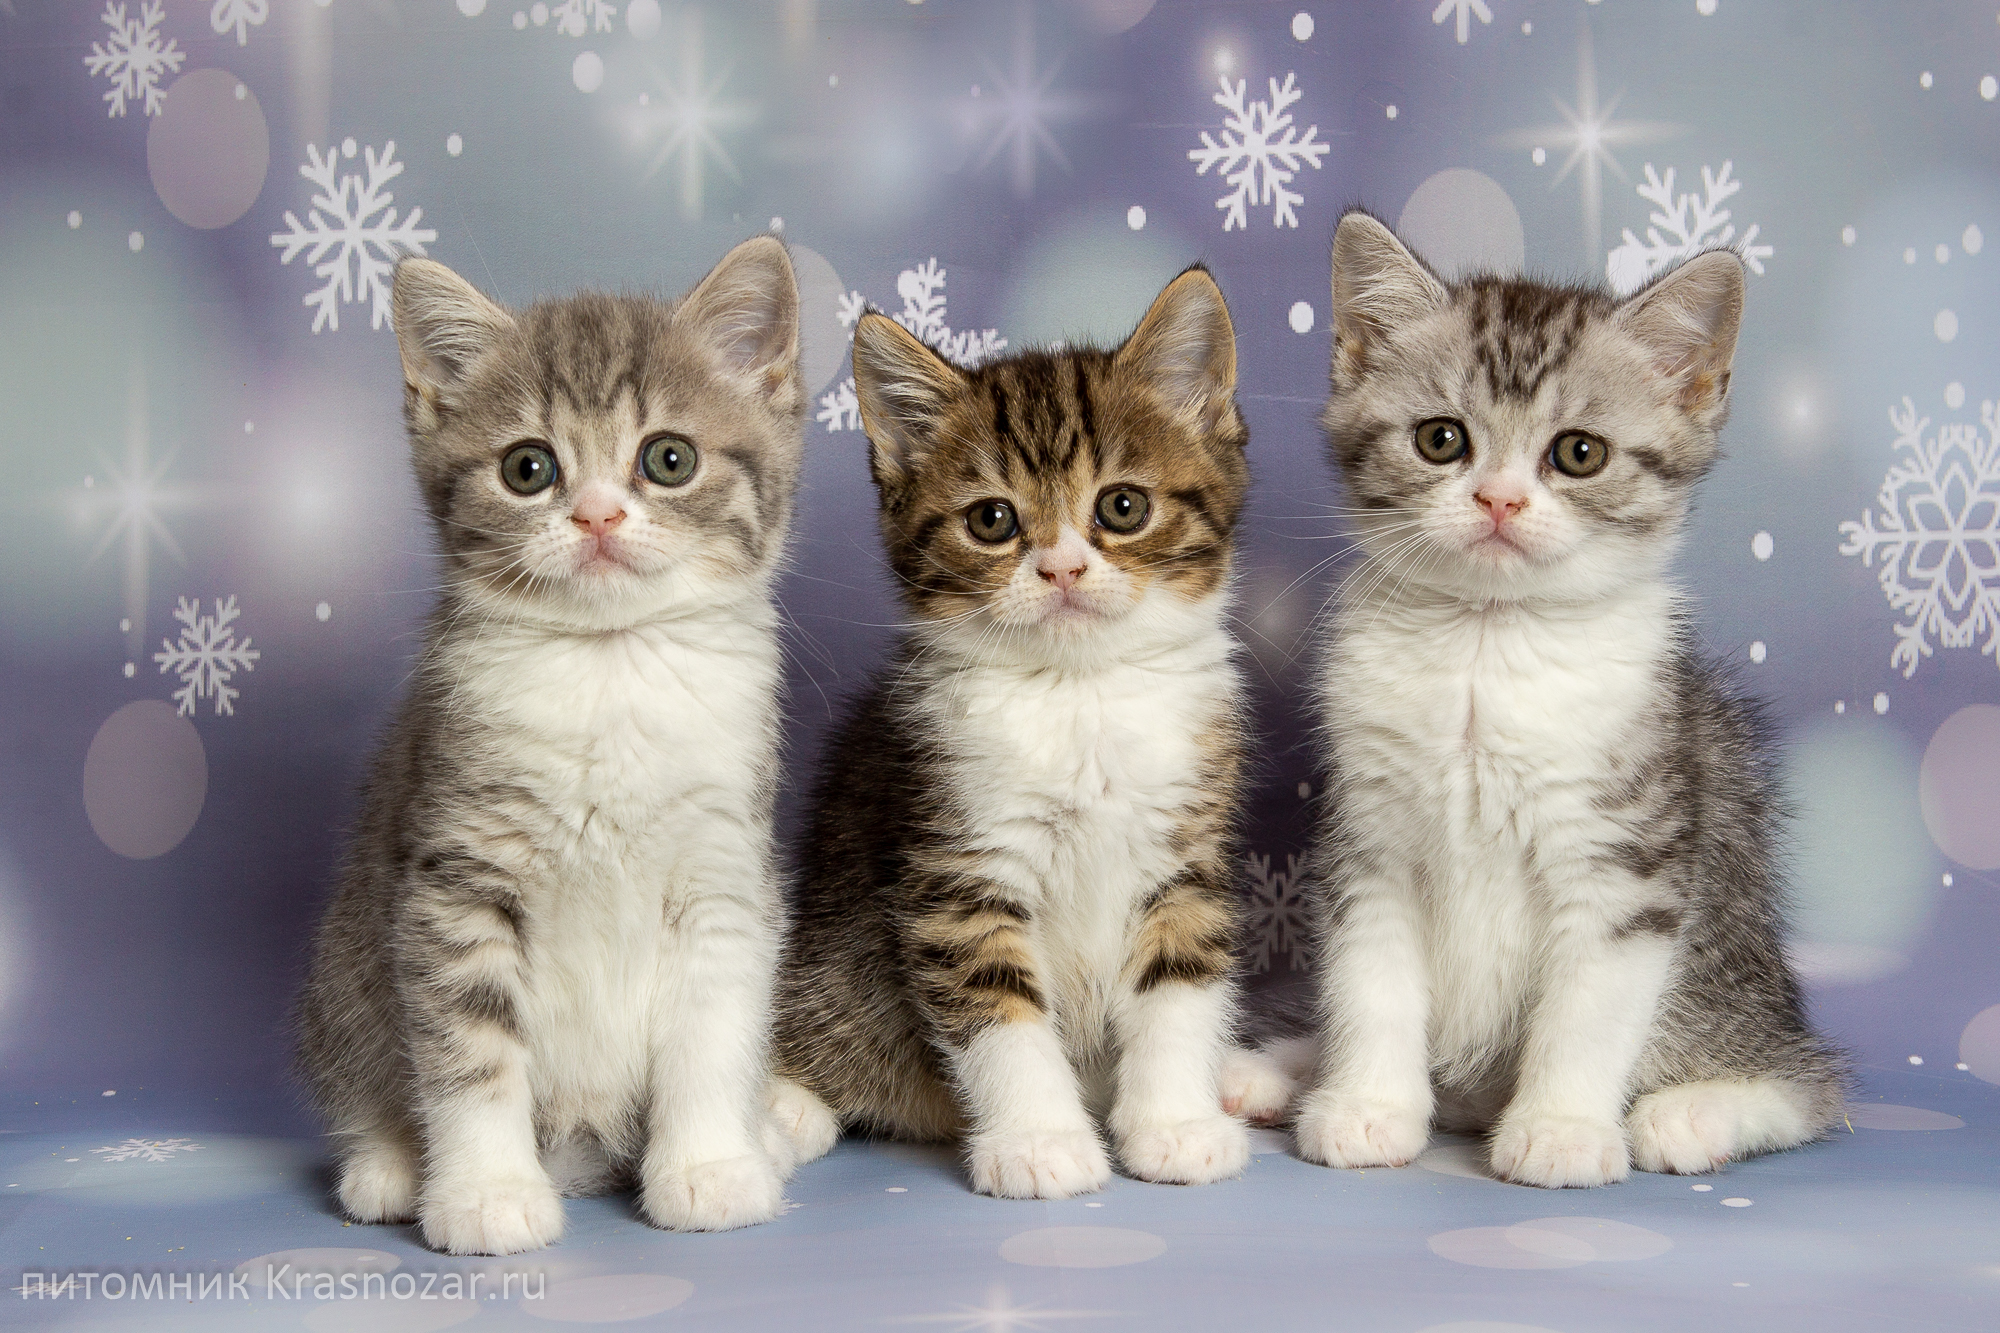 Купить новую кошку. Новогодние котята. Котята новый год. Три котенка. Три кошки.